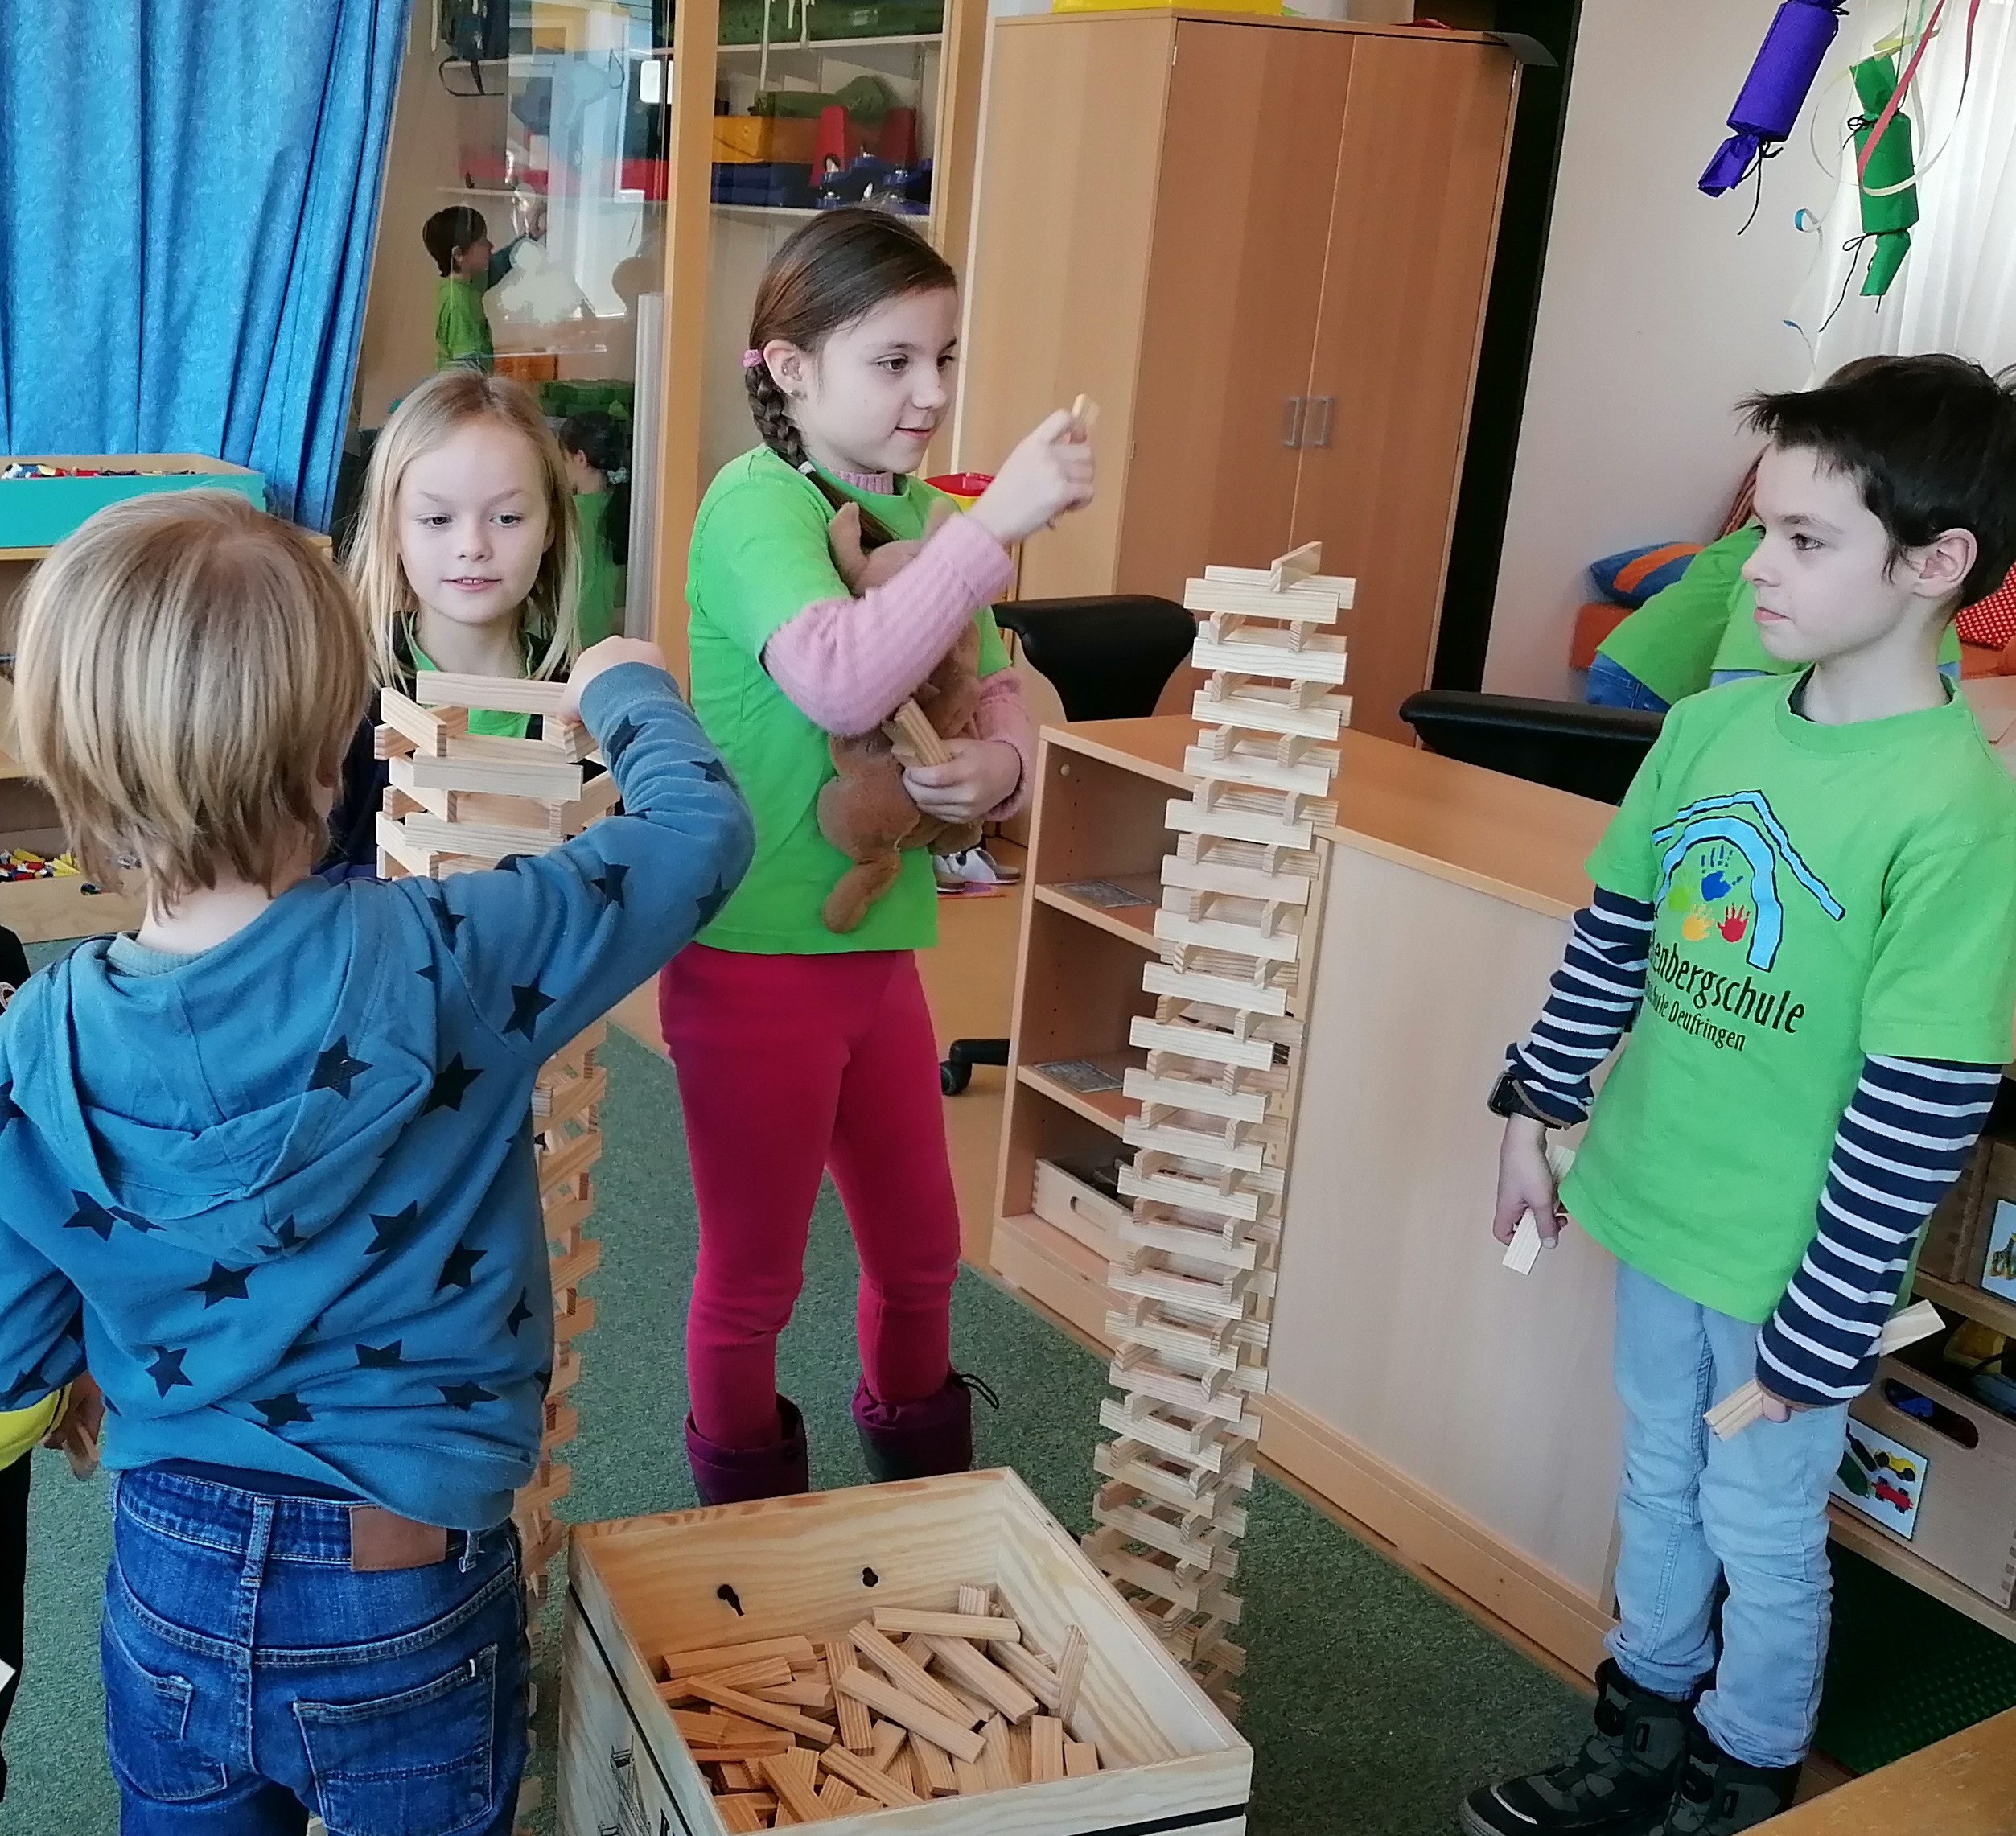 Gemeinsam spielen Schul- und Kindergartenkinder und bauen einen großen Turm.